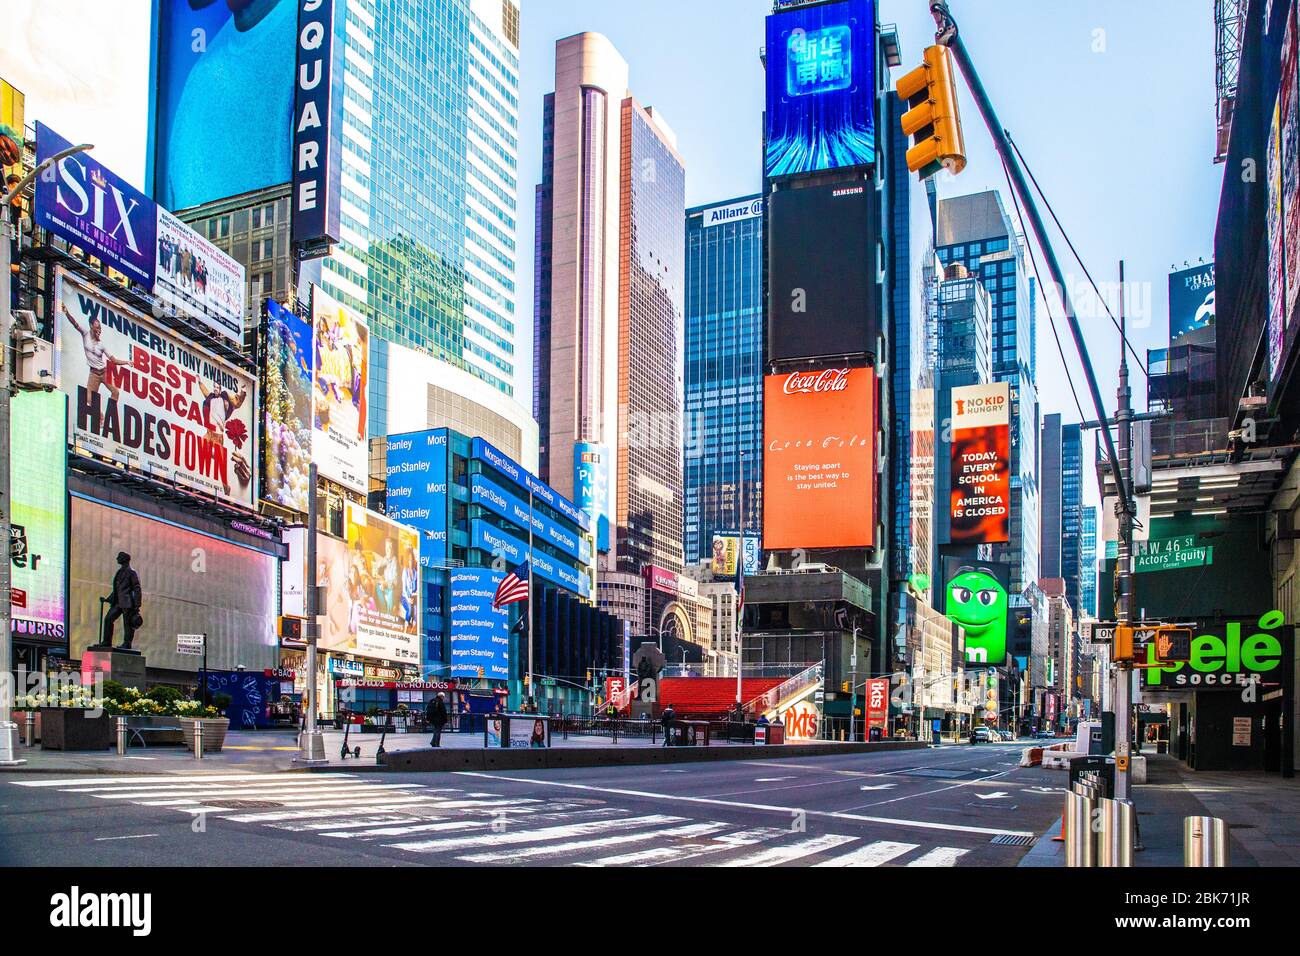 NEW YORK CITY - 19 AVRIL 2020 : vue sur la rue vide de Times Square, New York à Manhattan pendant le verrouillage pandémique du Covid-19 Coronavirus. Banque D'Images